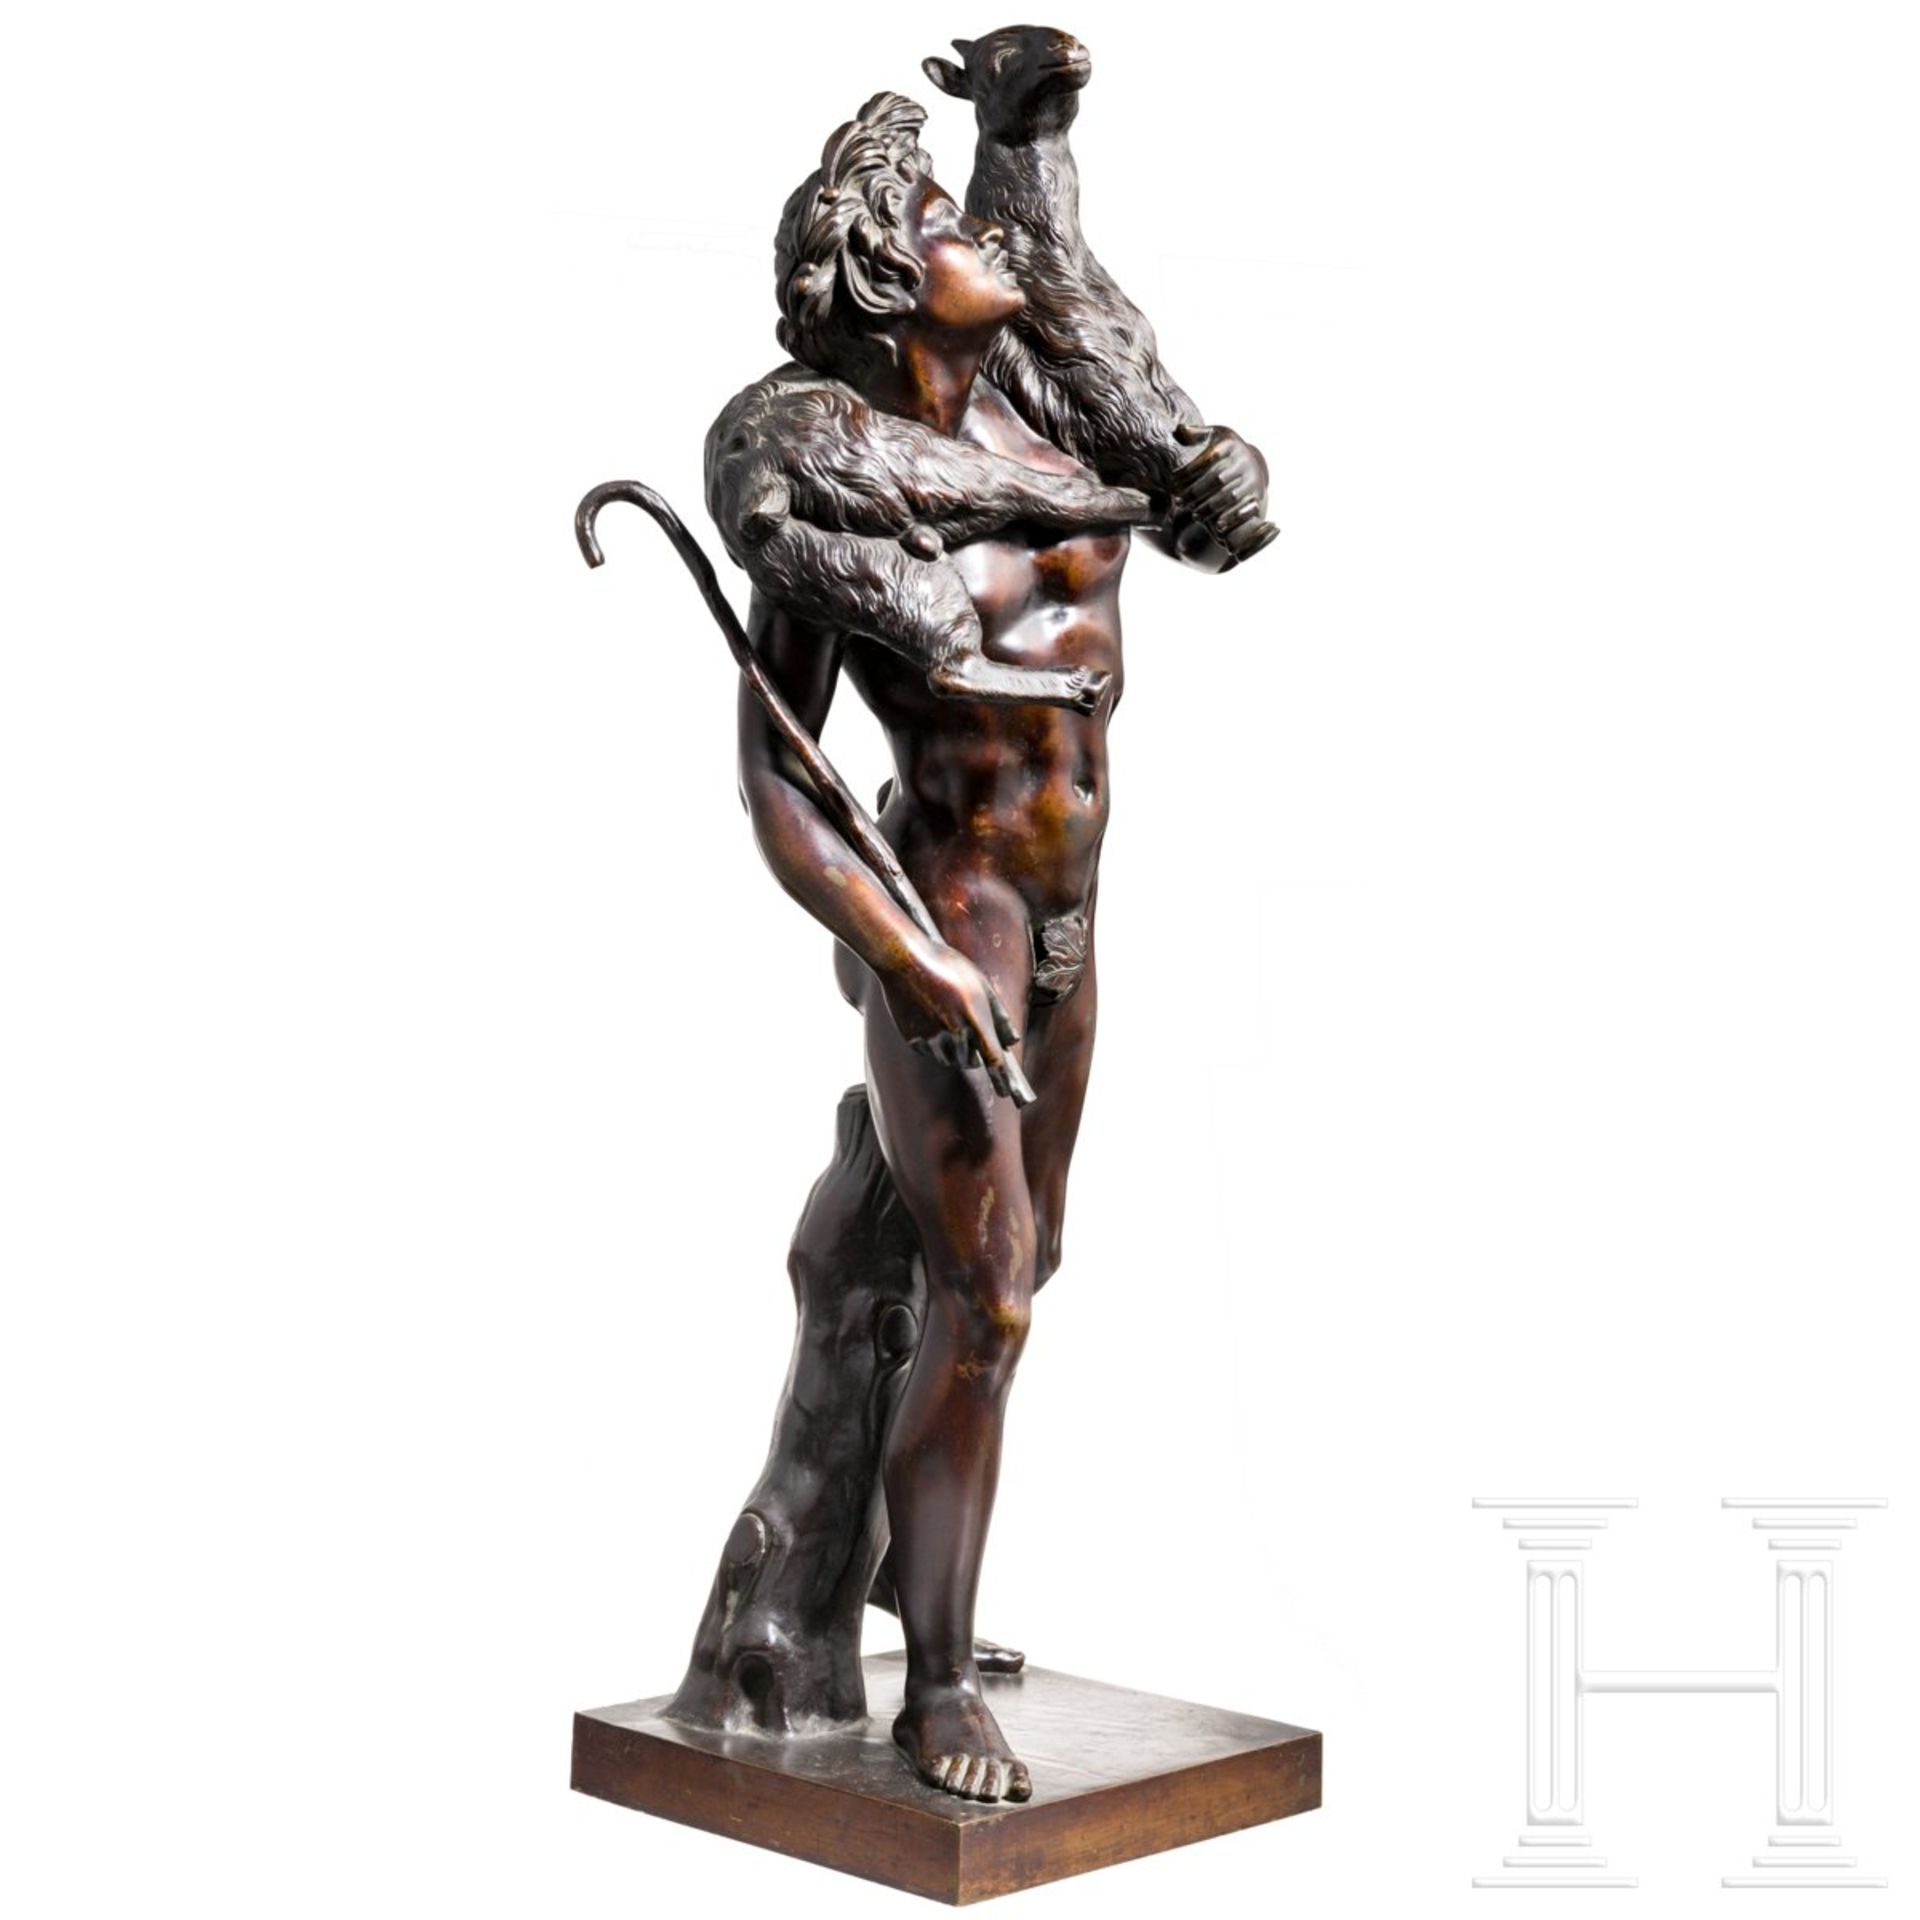 Klassizistische Grand Tour-Skulptur eines Fauns als Hirte, Frankreich, 19. Jhdt.Nach dem Modell - Bild 2 aus 3